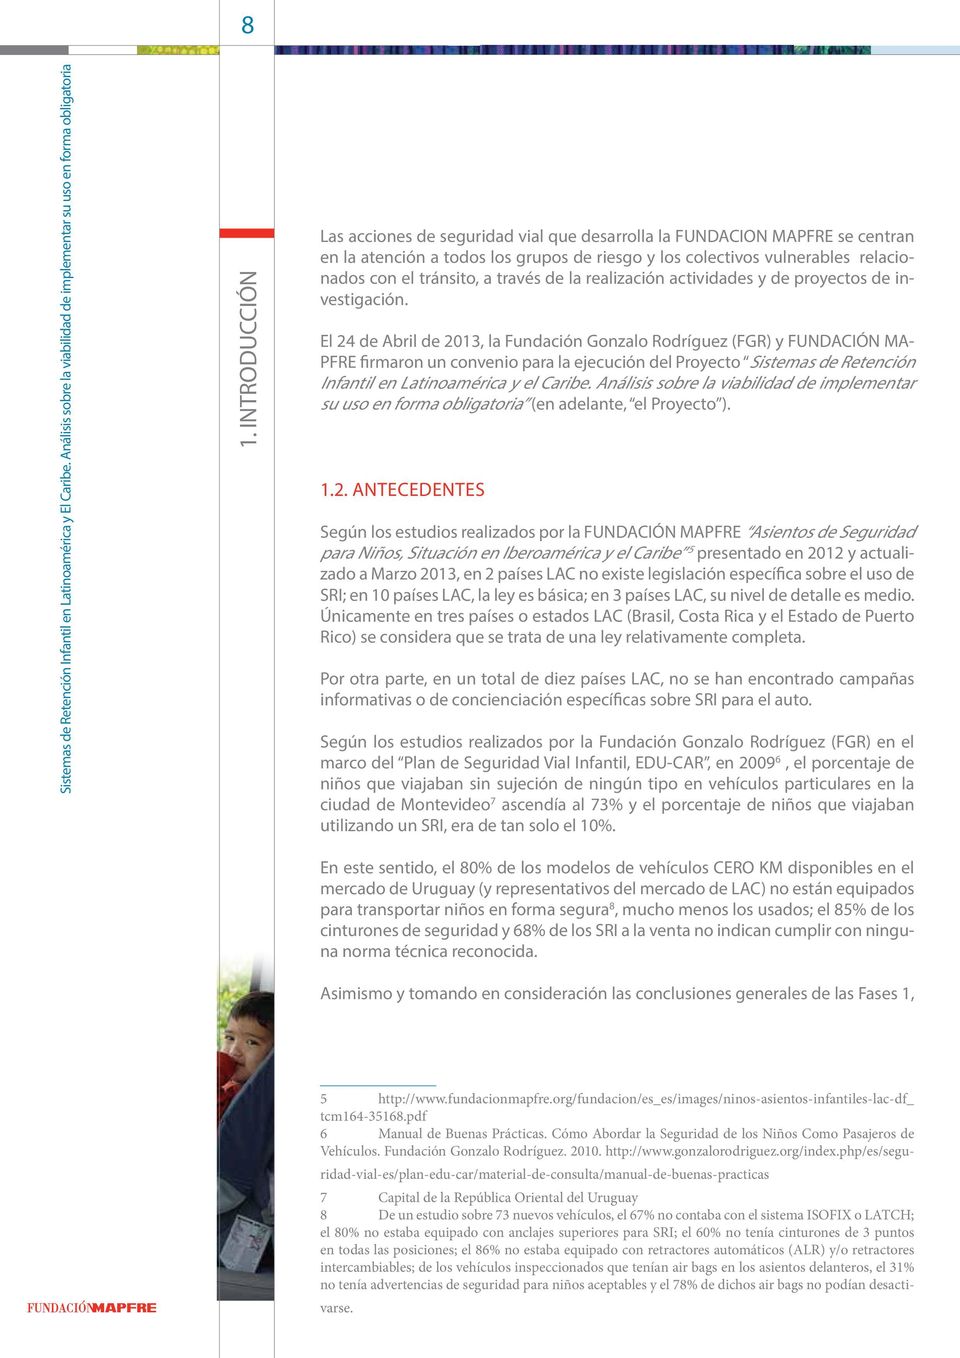 El 24 de Abril de 2013, la Fundación Gonzalo Rodríguez (FGR) y FUNDACIÓN MA- PFRE firmaron un convenio para la ejecución del Proyecto Sistemas de Retención Infantil en Latinoamérica y el Caribe.